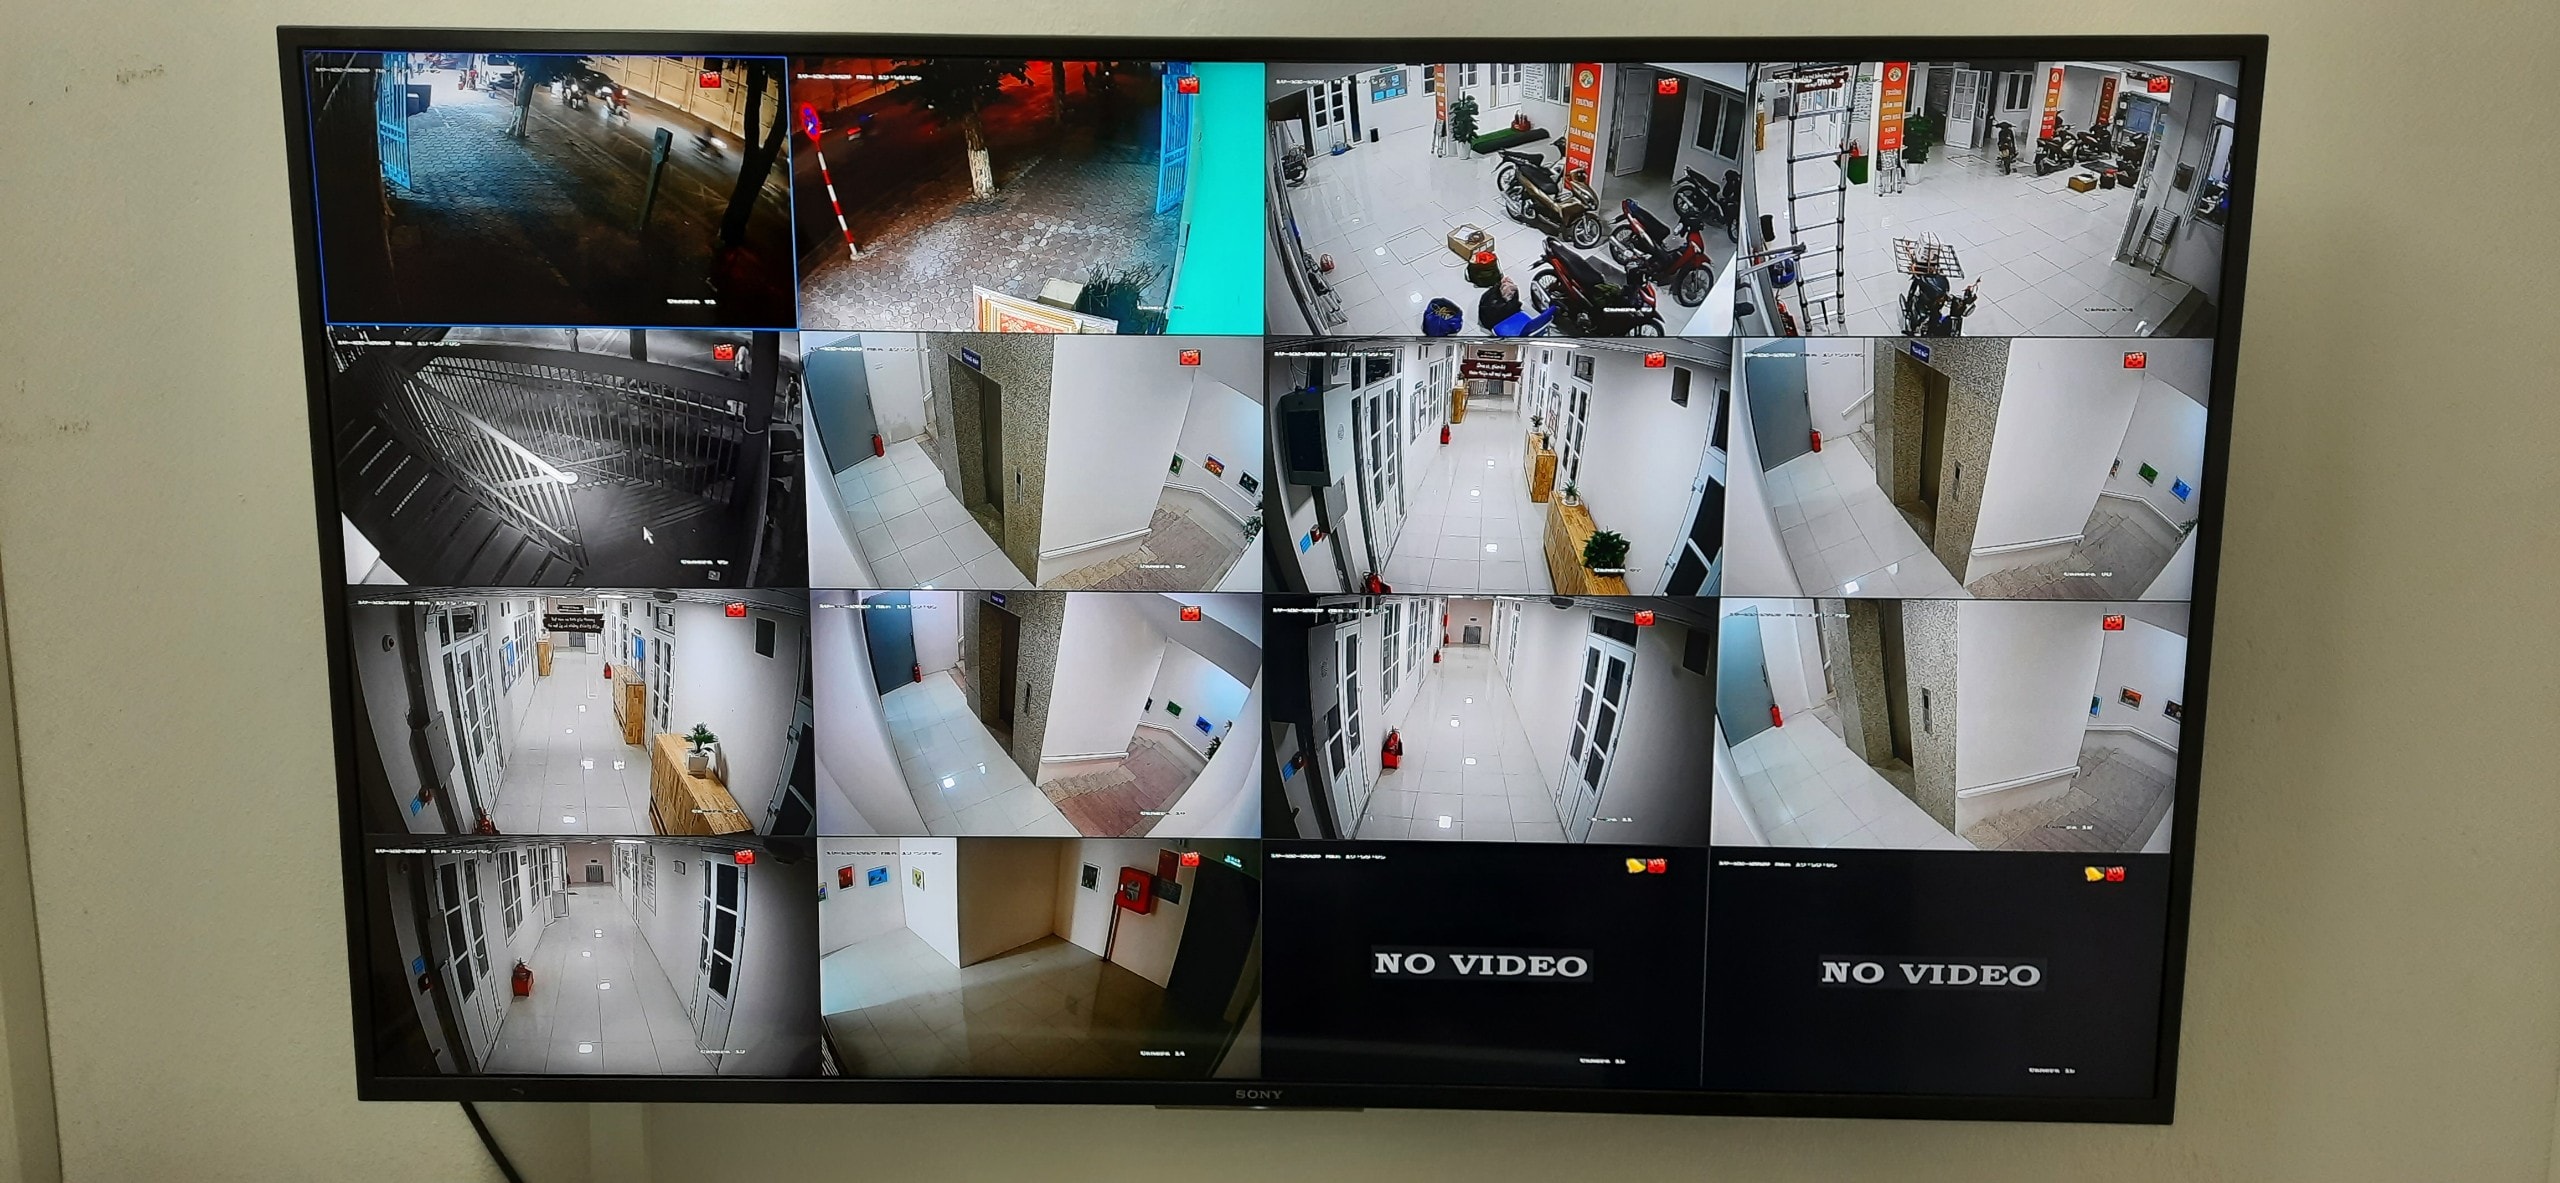 Lắp trọn bộ 14 camera Hikvision 2.0-1080P-tại trường mầm non 147 Nguyễn Thái Học-Ba Đình-HN